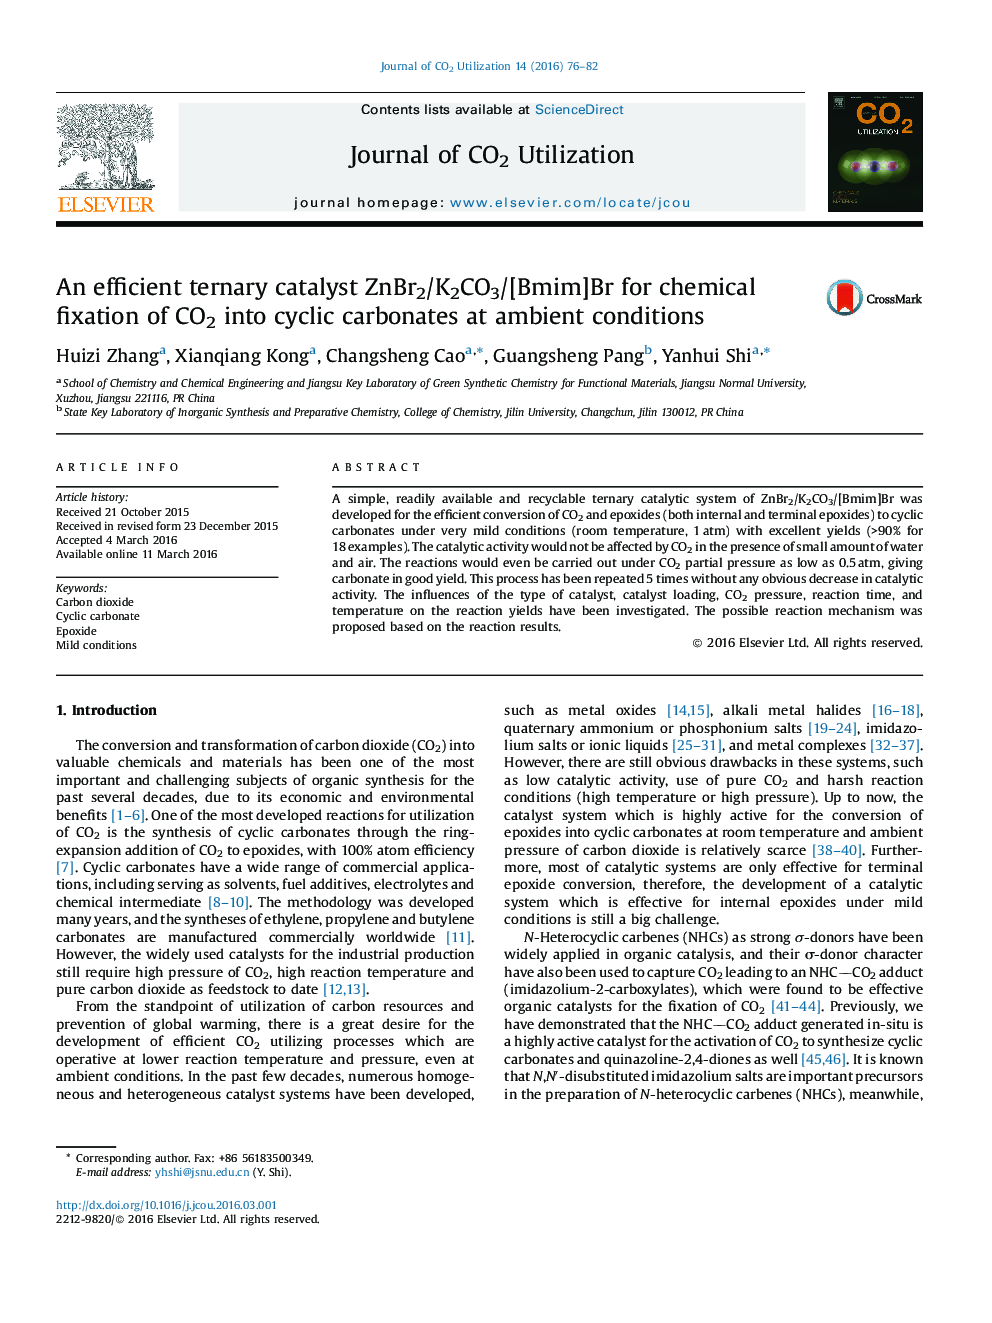 یک ZnBr2/K2CO3/[Bmim]Br کاتالیزور سه تایی کارآمد برای تثبیت شیمیایی CO2 در کربنات‌های چرخه ای در شرایط محیطی